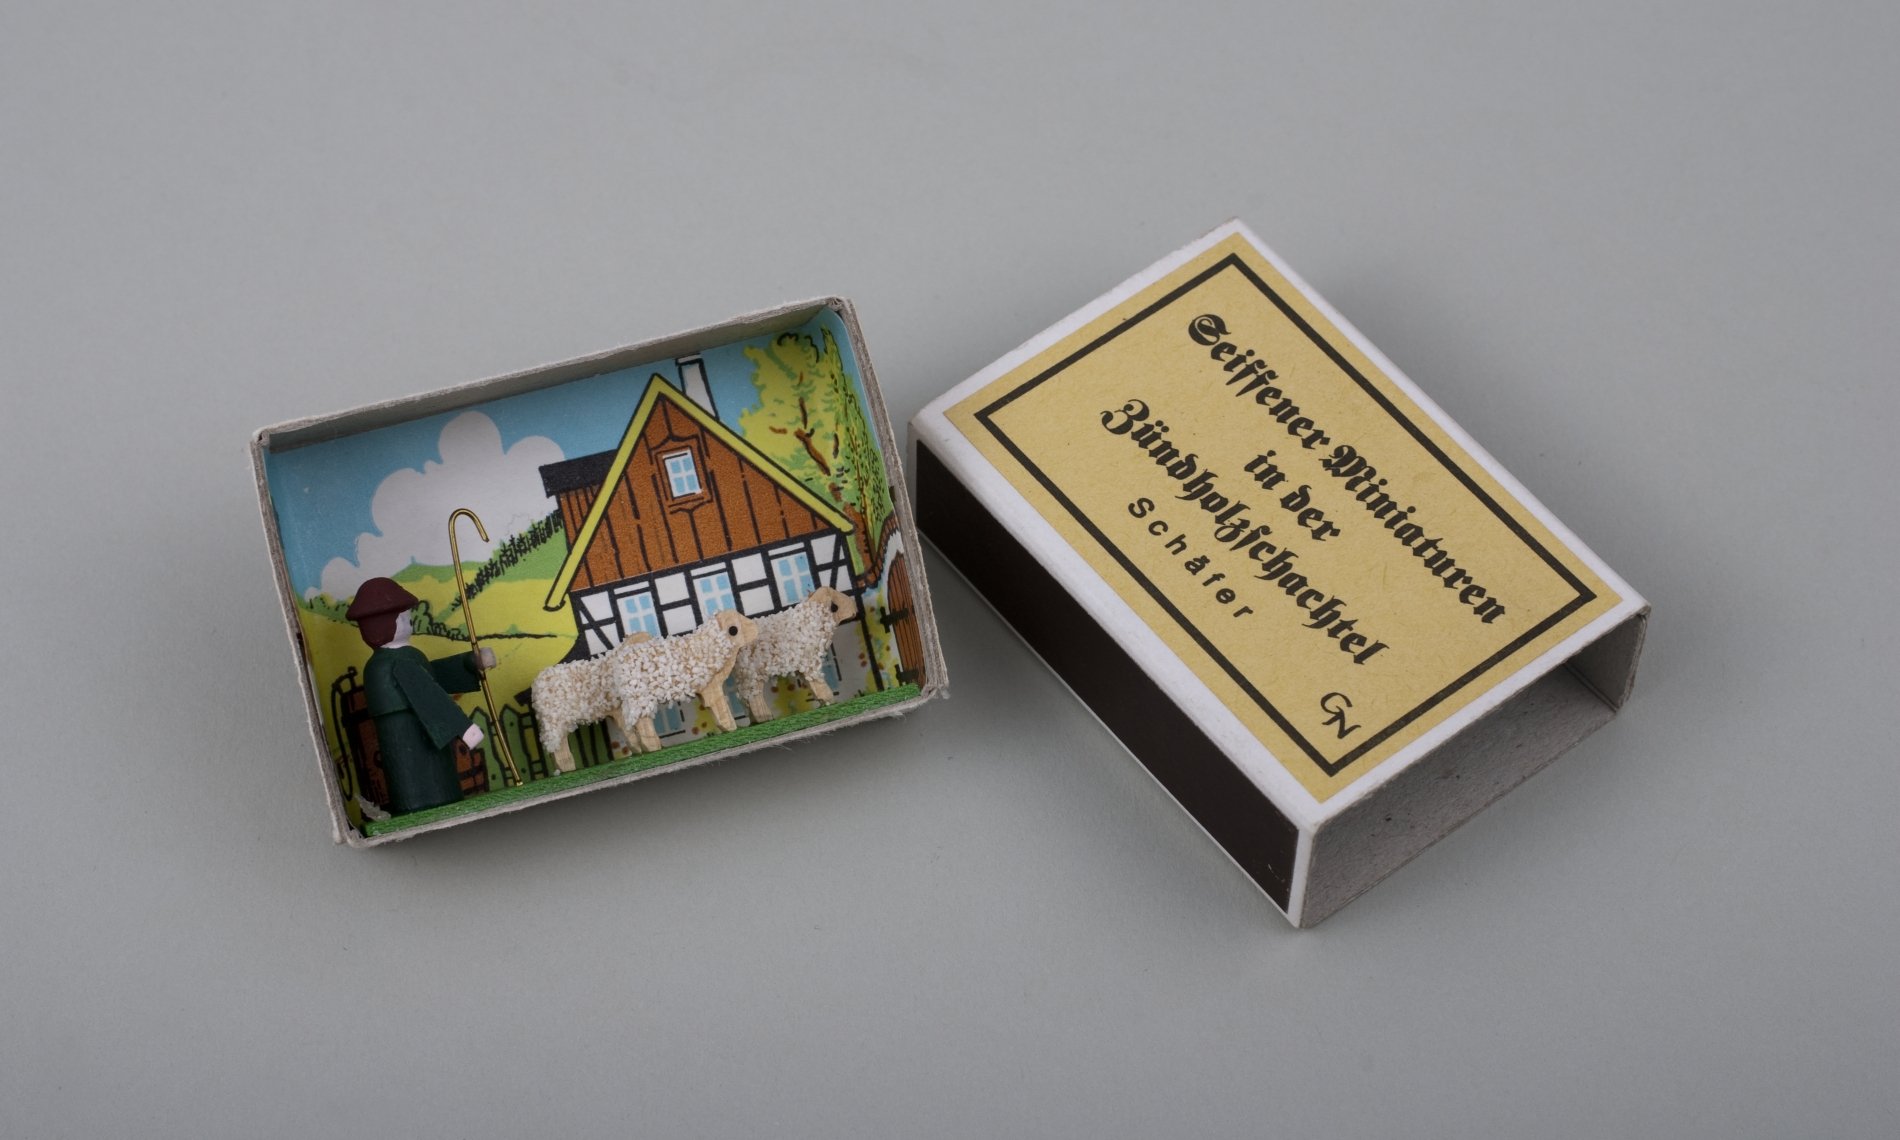 Seiffener Schäfer Miniatur in einer Zündholzschachtel (Stiftung Domäne Dahlem - Landgut und Museum, Weiternutzung nur mit Genehmigung des Museums CC BY-NC-SA)